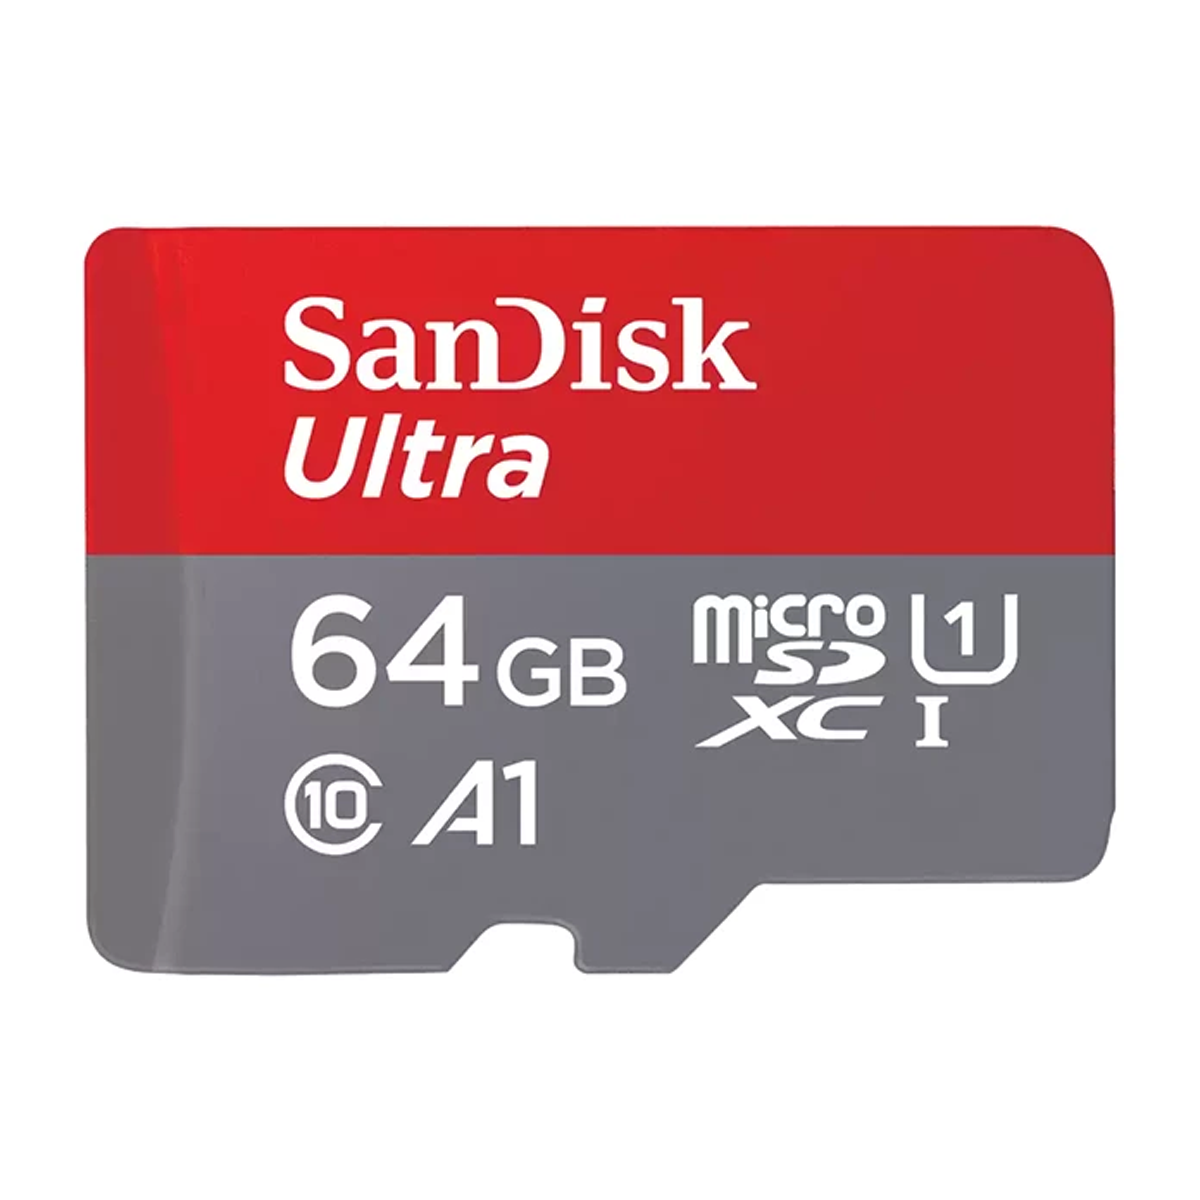 کارت حافظه microSDXC سن دیسک مدل Ultra A1 کلاس 10 استاندارد UHS-I سرعت 140MBps ظرفیت 64 گیگابایت